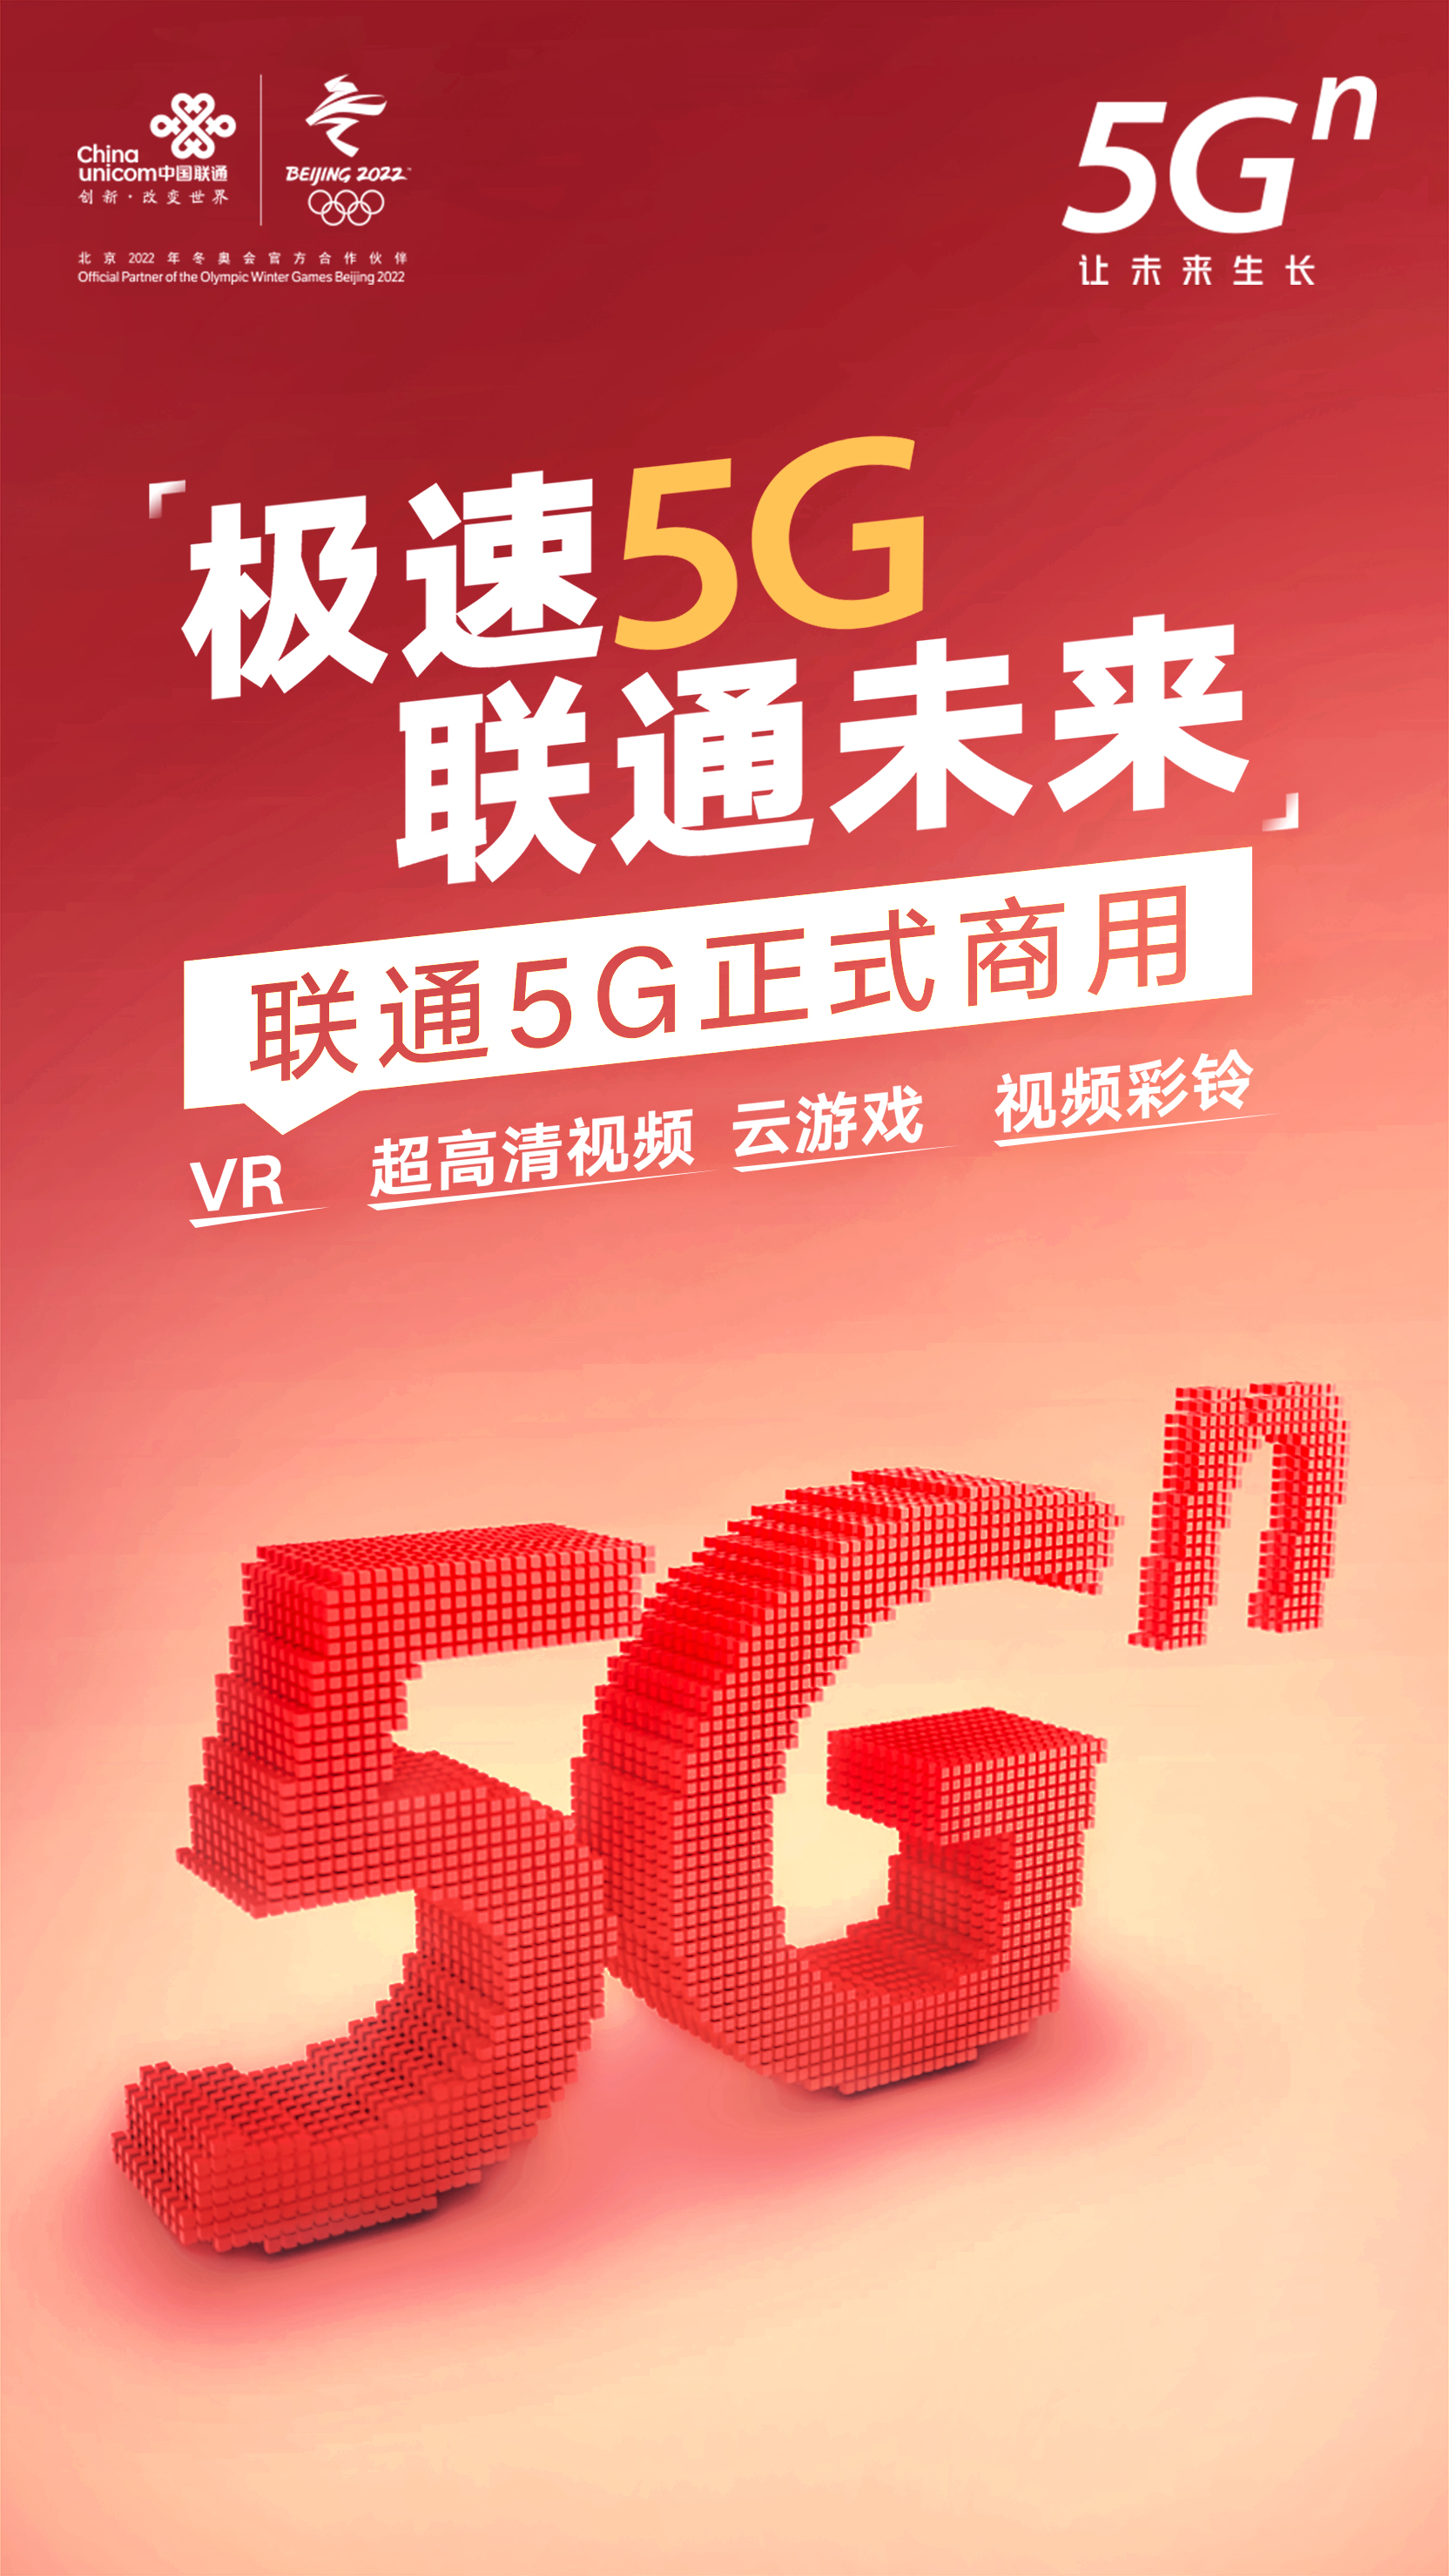 中国发放 5G 商用许可证，开启全新发展纪元，5G 速度惊人，未来充满无限可能  第6张